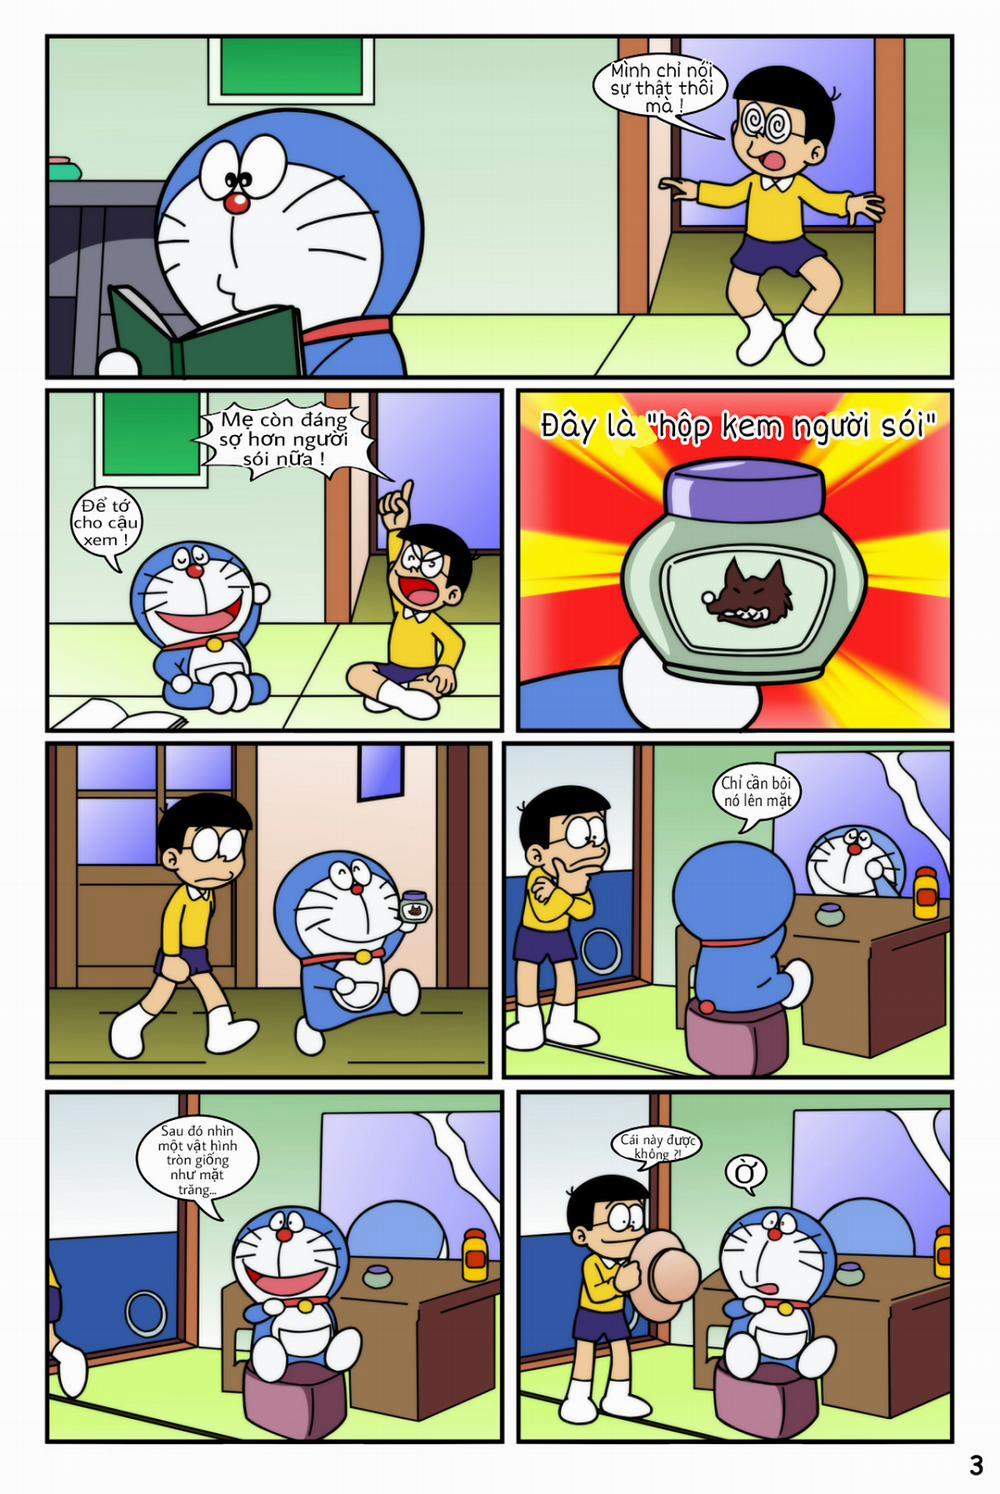 Tuyển Tập Doraemon Doujinshi 18+ Chương 19 Kem ch s i 1 Trang 5